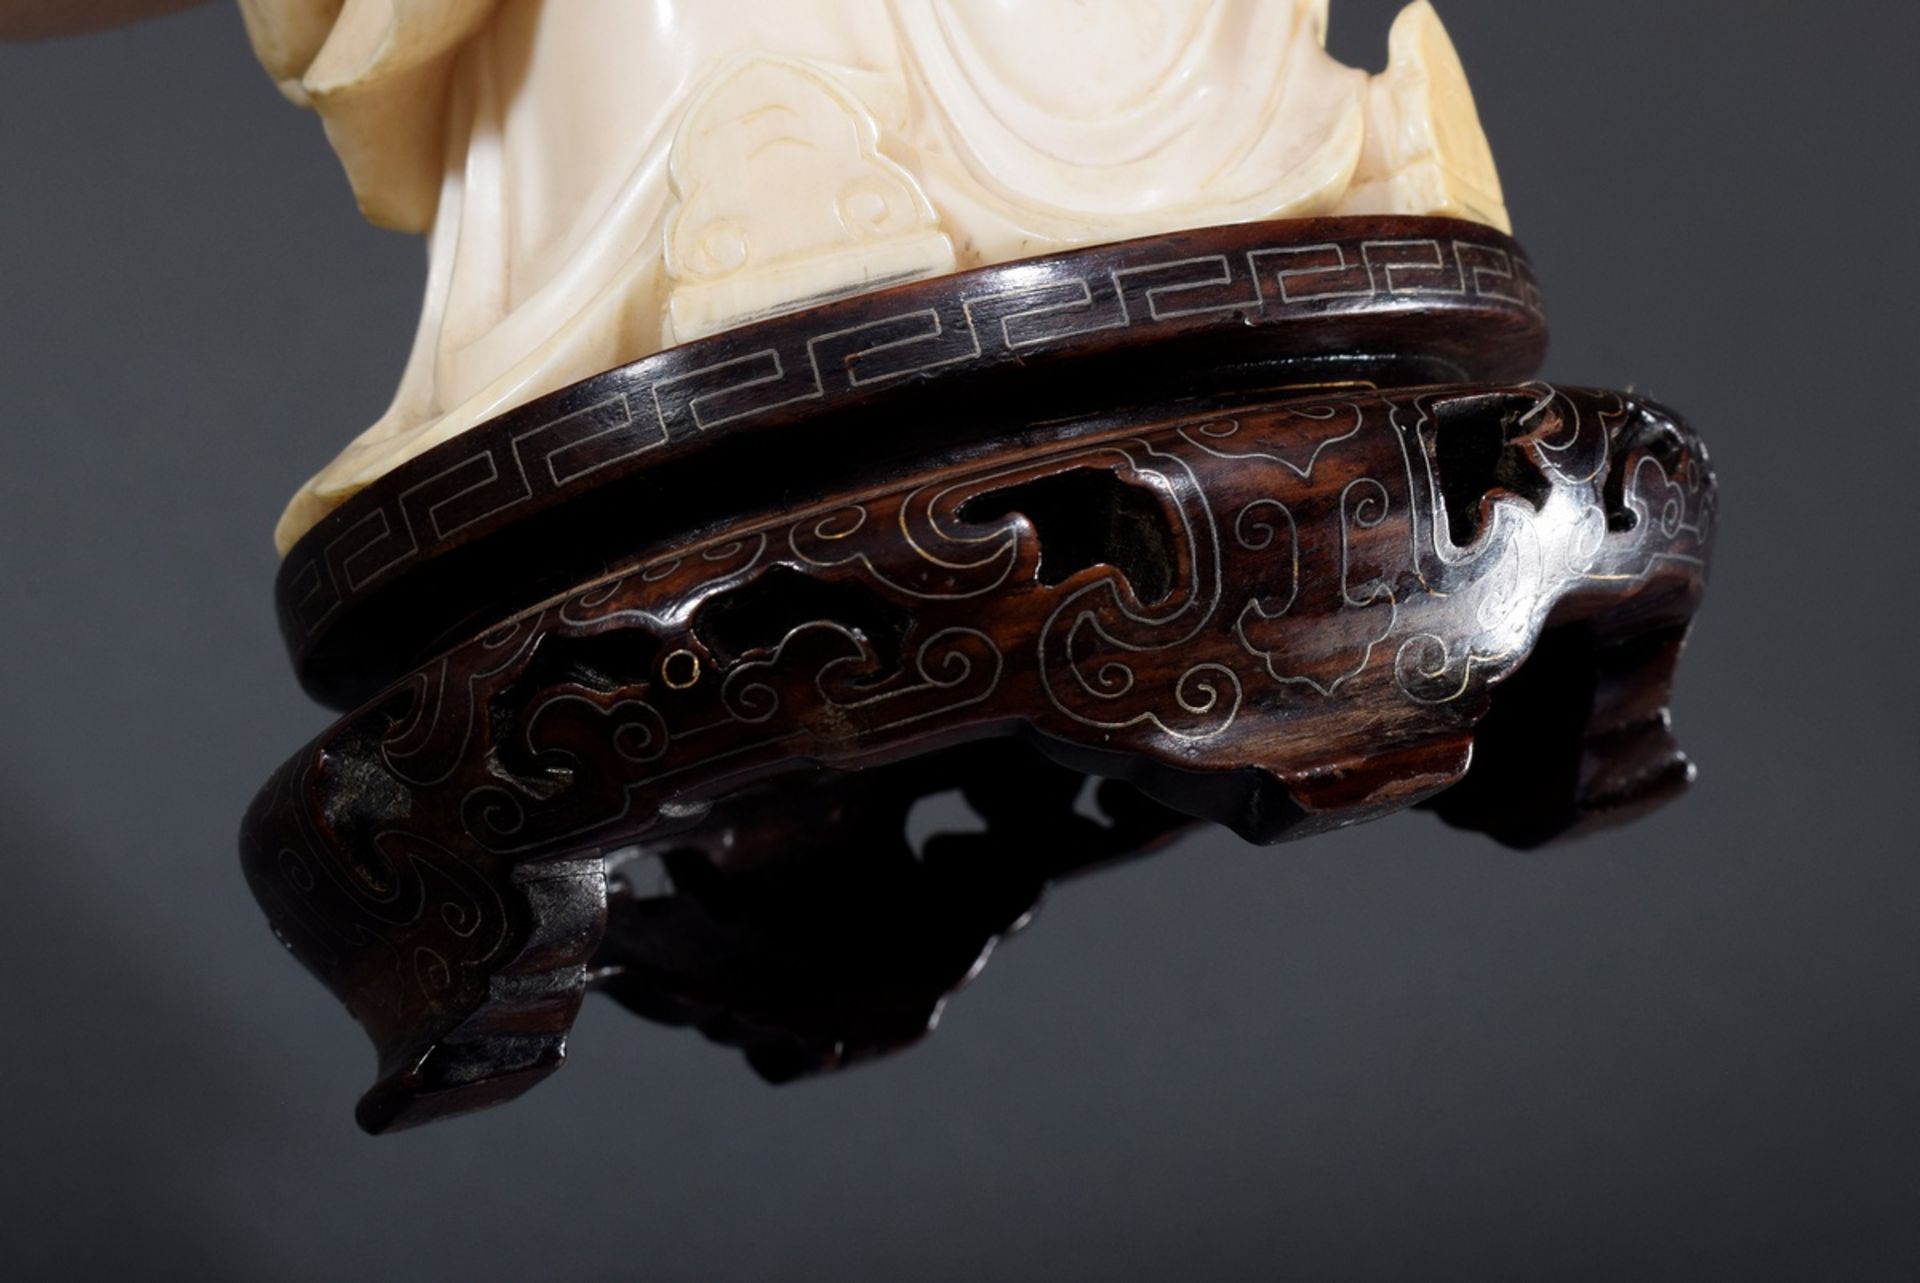 Chinesische Elfenbein Schnitzerei "Konfuzius, de | Chinese ivory carving "Confucius, looking up to - Bild 9 aus 9